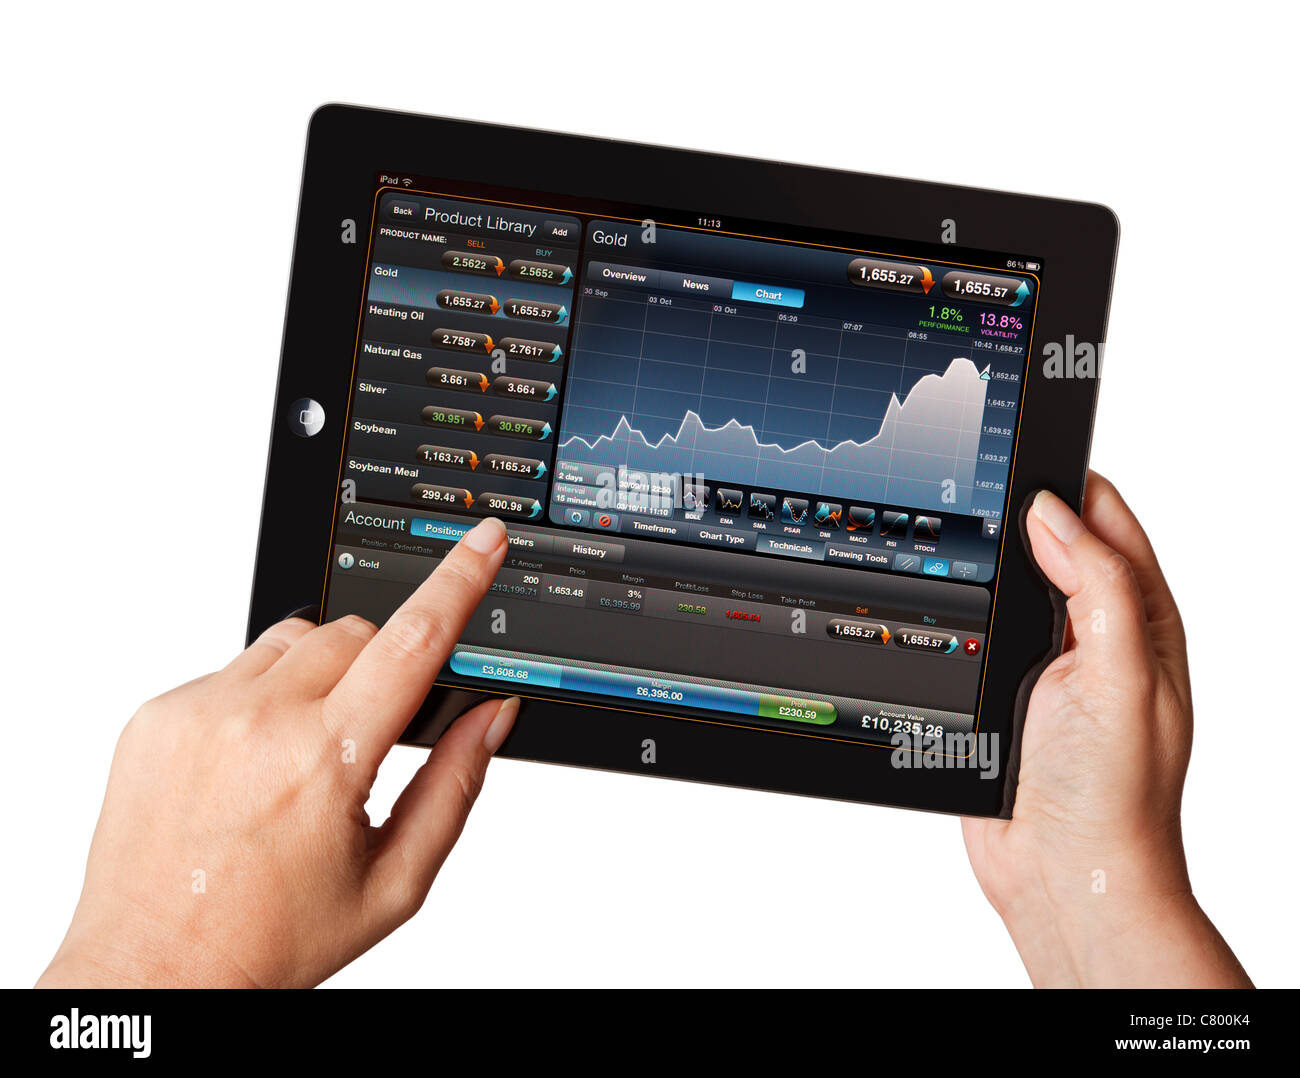 Il mercato azionario trading - Mani tenendo iPad utilizzando un live stock market trading applicazione Foto Stock